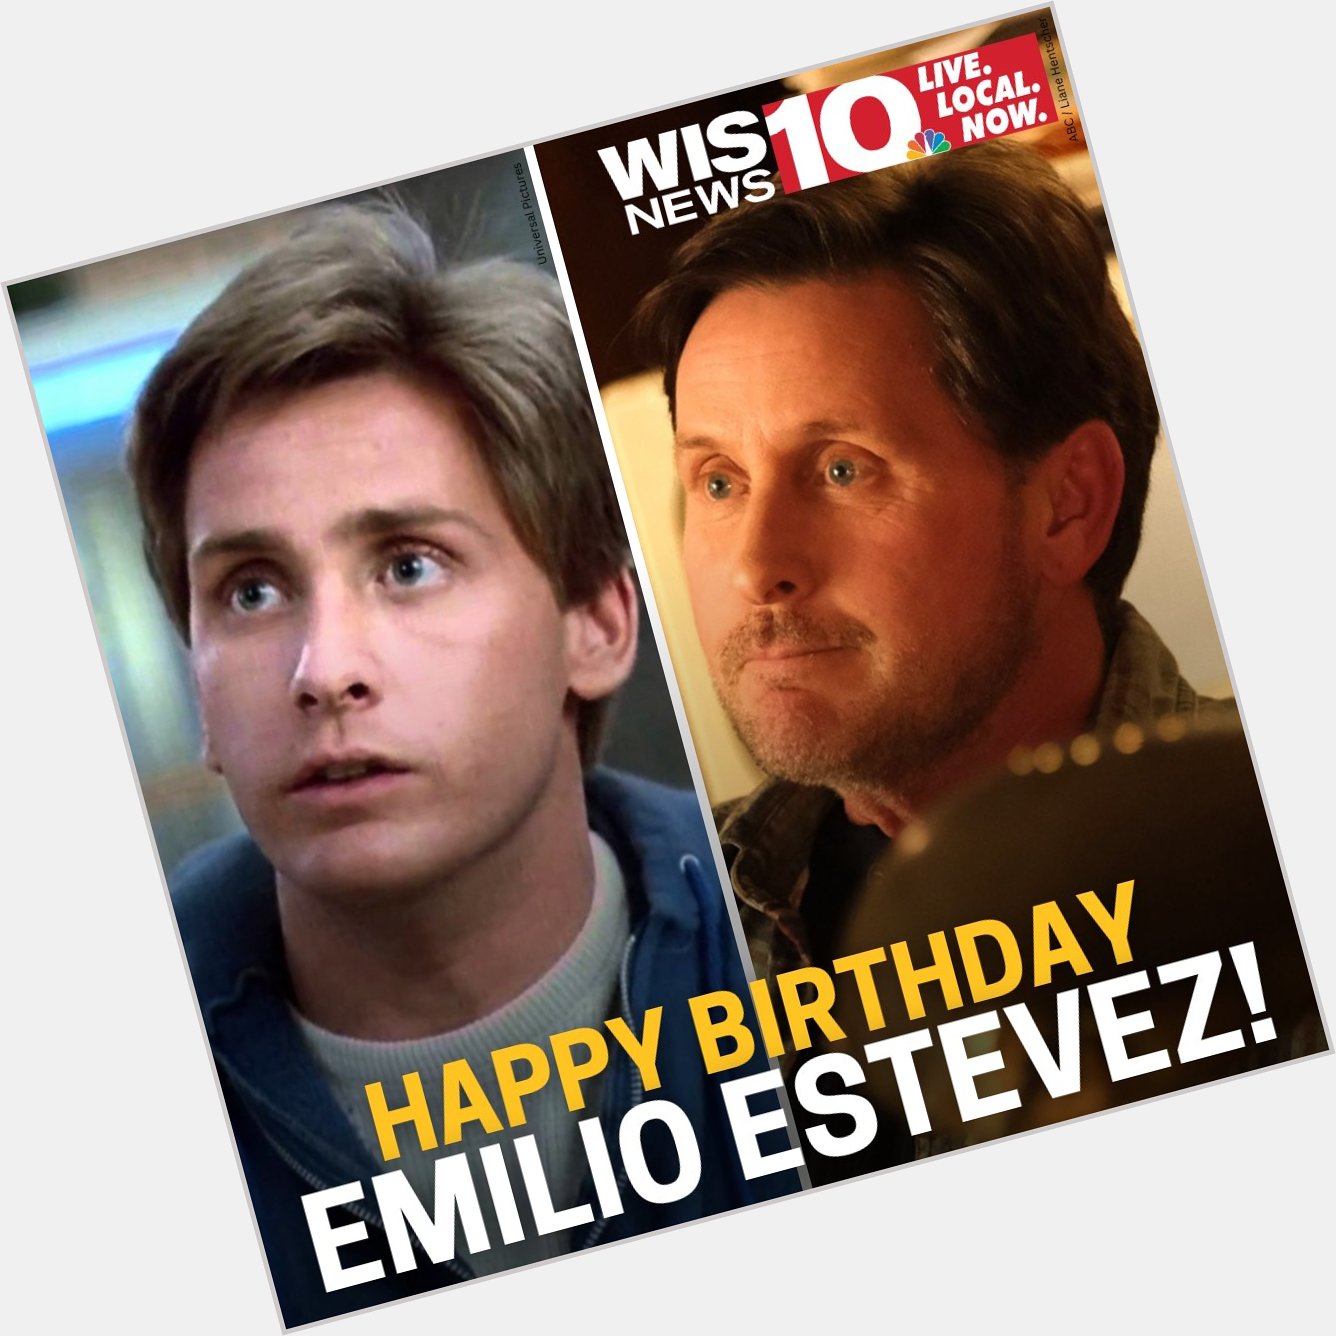 Happy birthday Emilio Estevez! 